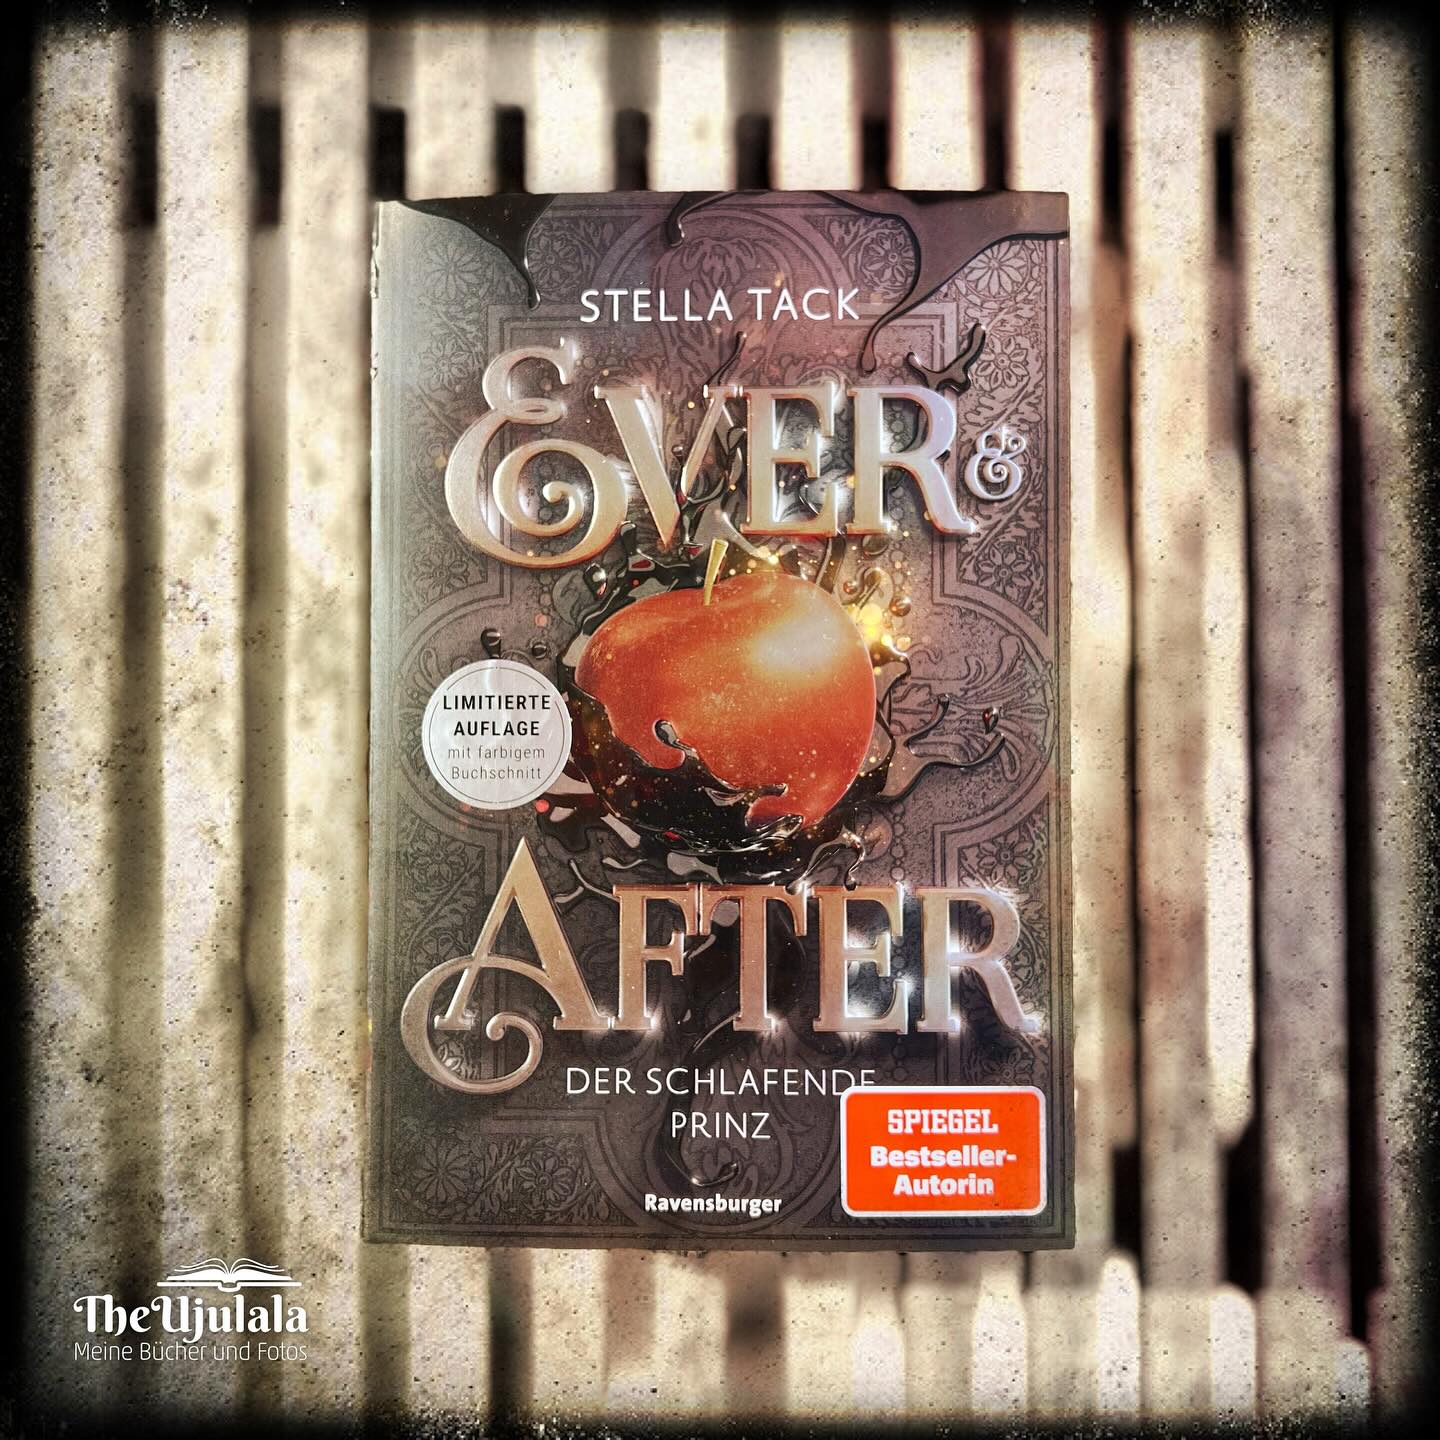 Stella Tack "Ever & After – Der schlafende Prinz" ©2023 Ravensburger Verlag